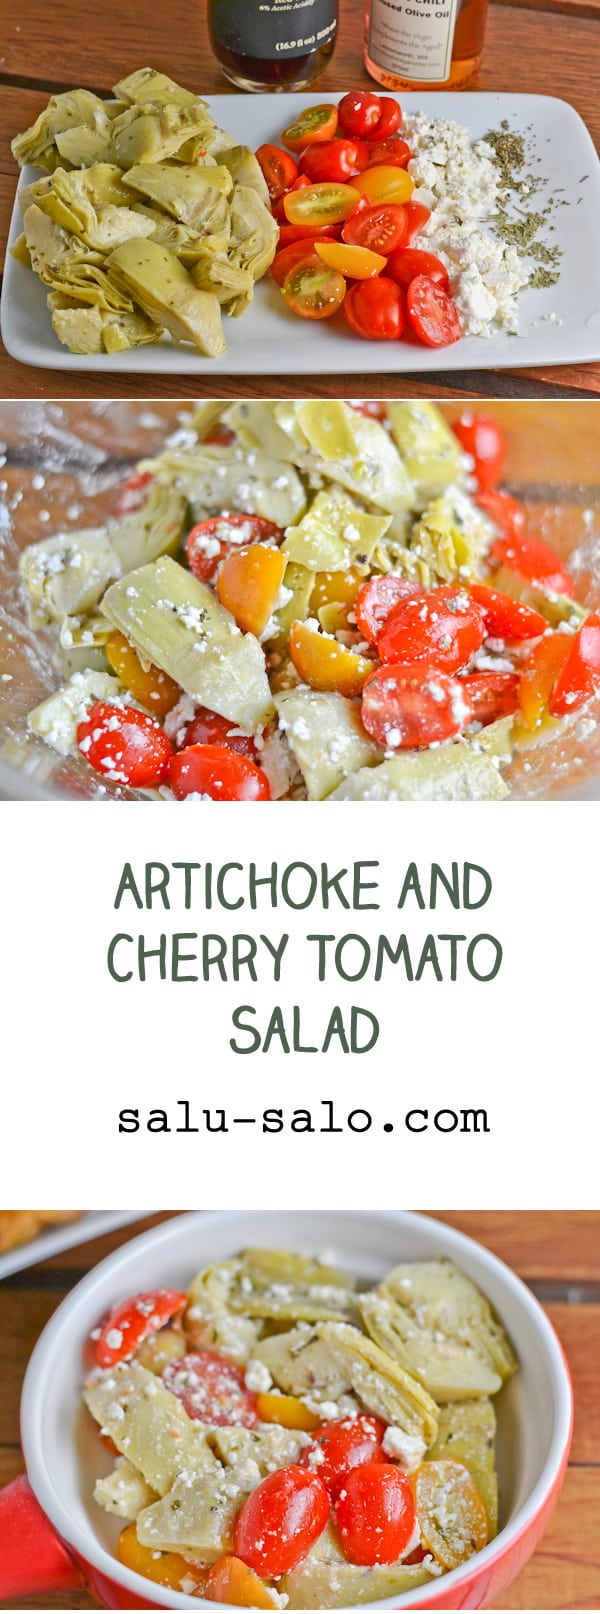 Artichoke and Cherry Tomato Salad